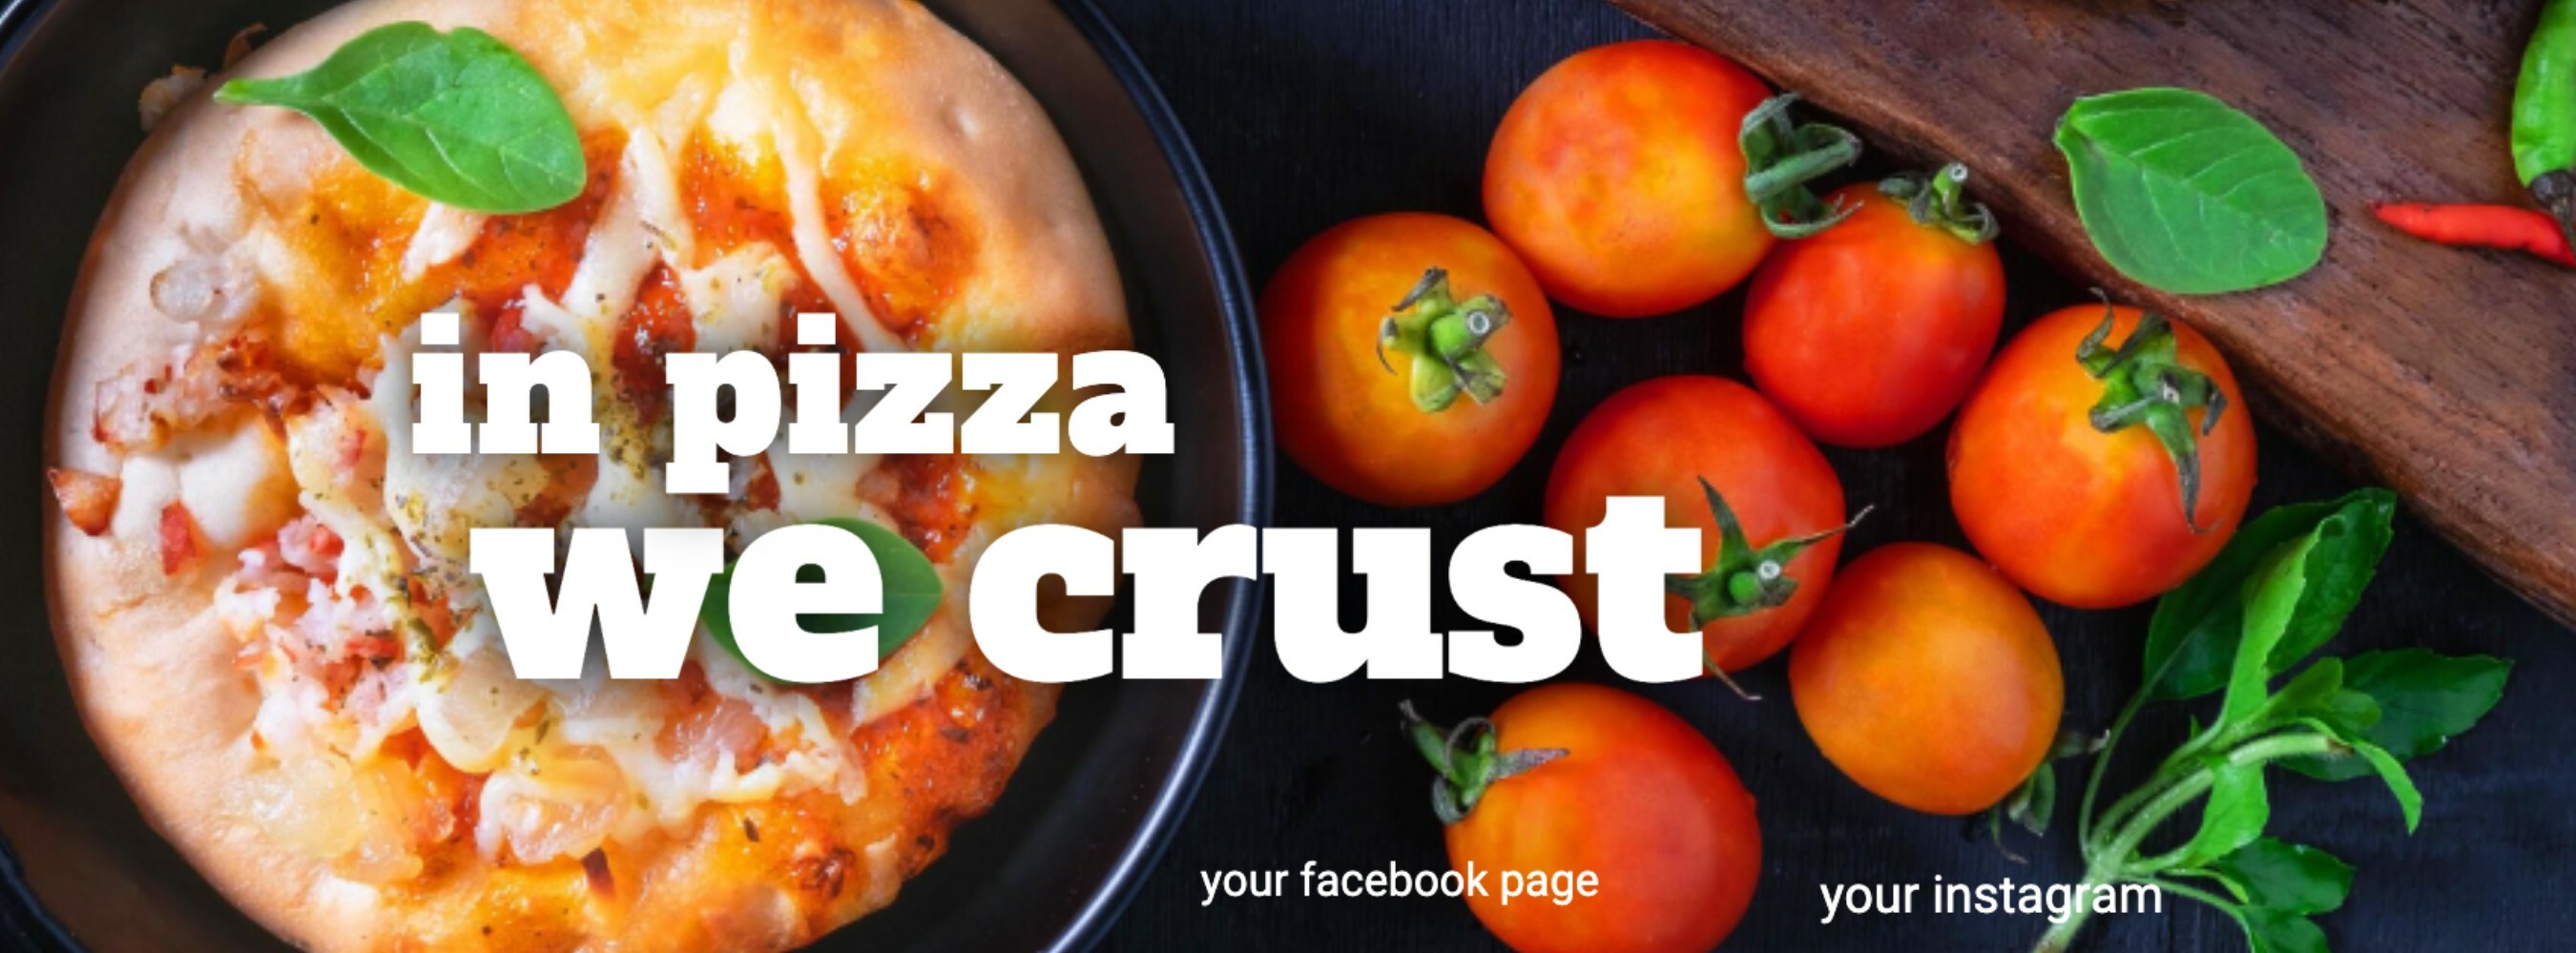 In Pizza We Crust template